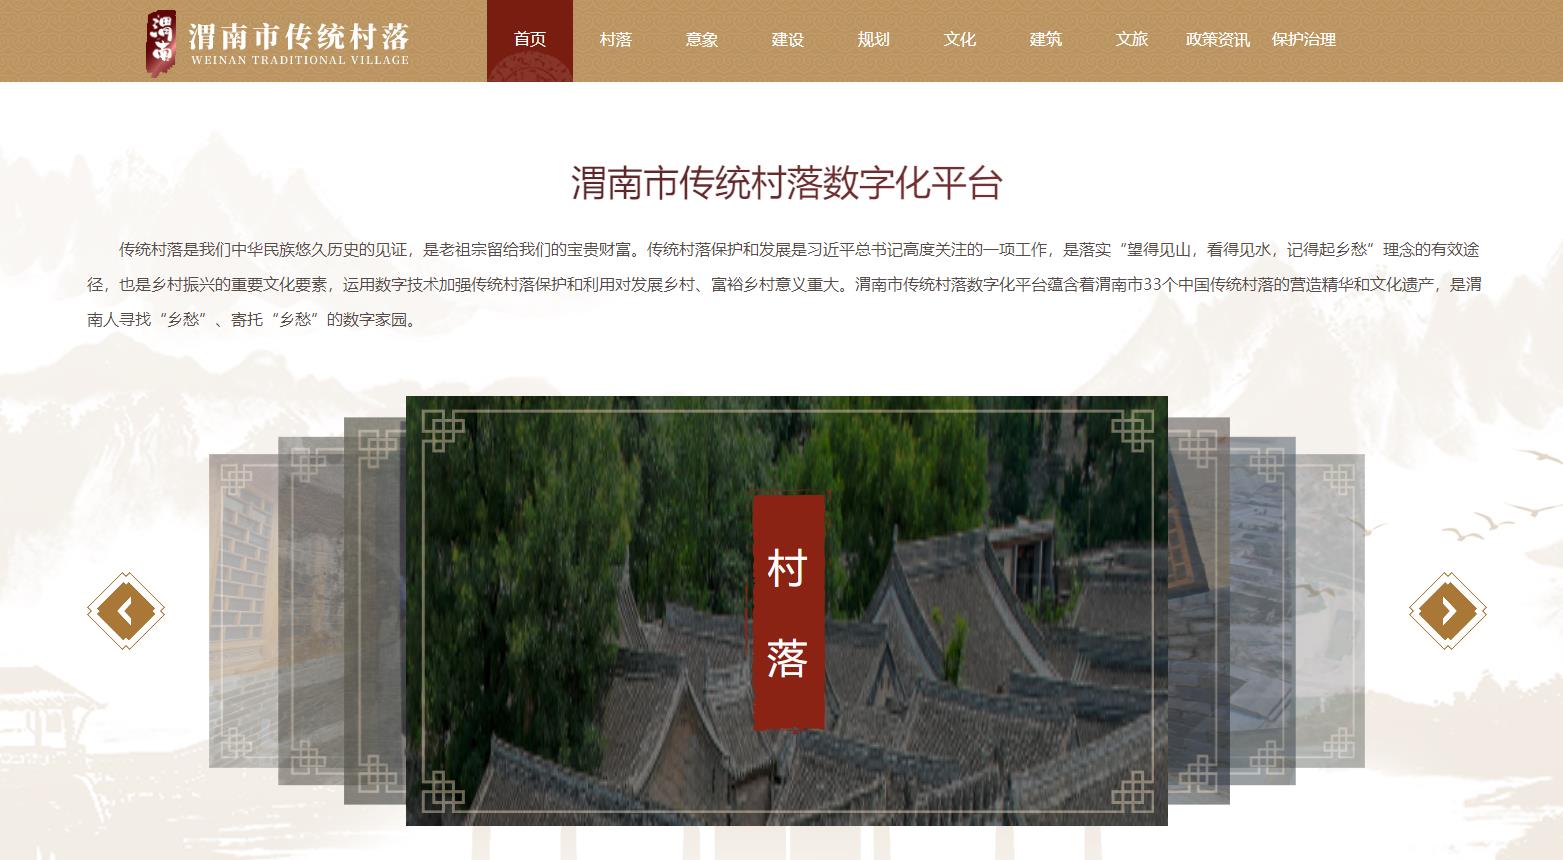 渭南市传统村落数字化平台上线